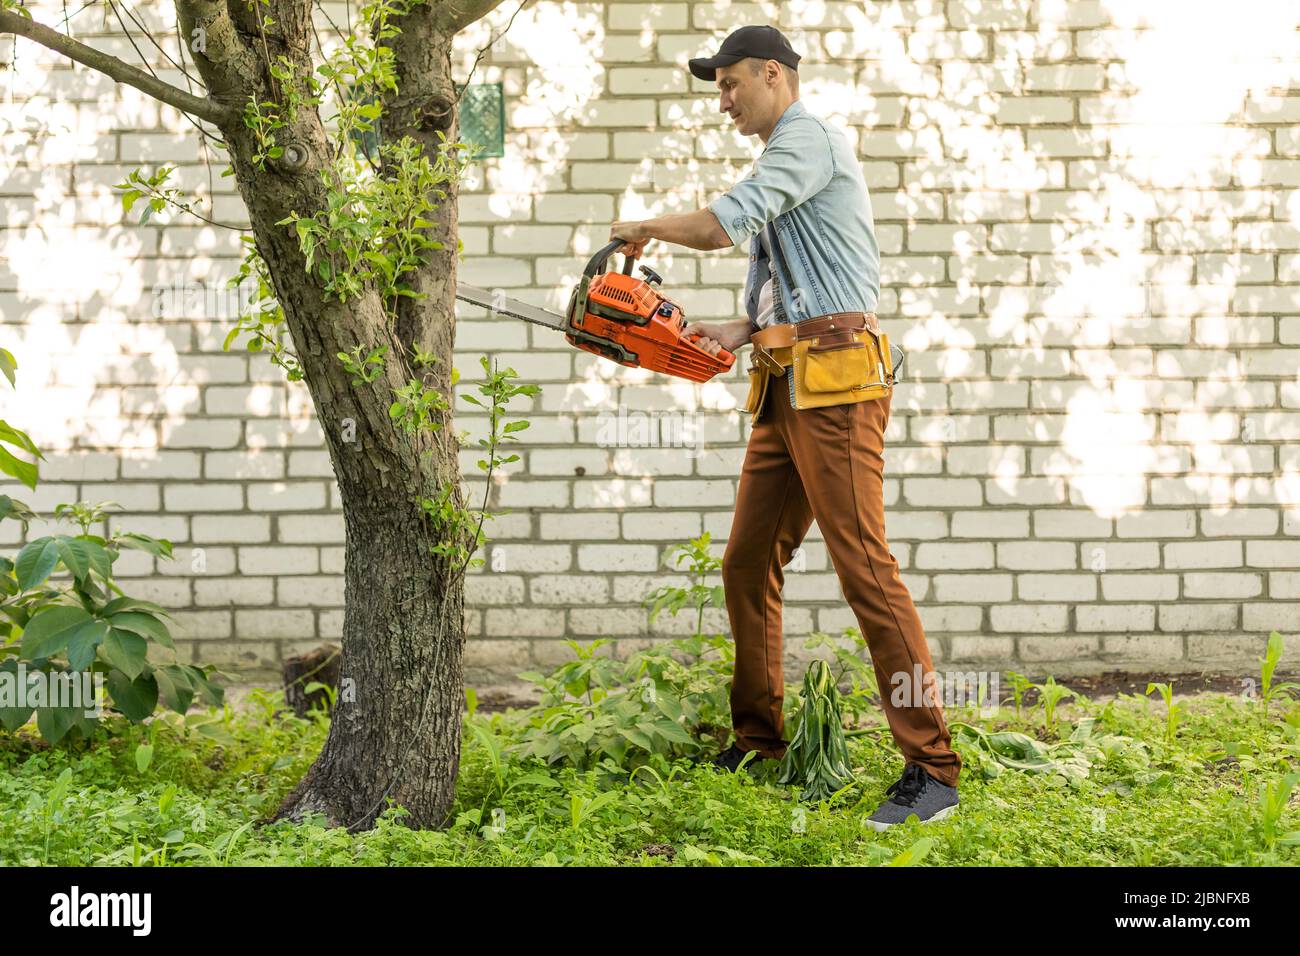 Ein Mann mit einer Kettensäge. Entfernt Pflanzungen im Garten von alten Bäumen, erntet Brennholz. Stockfoto